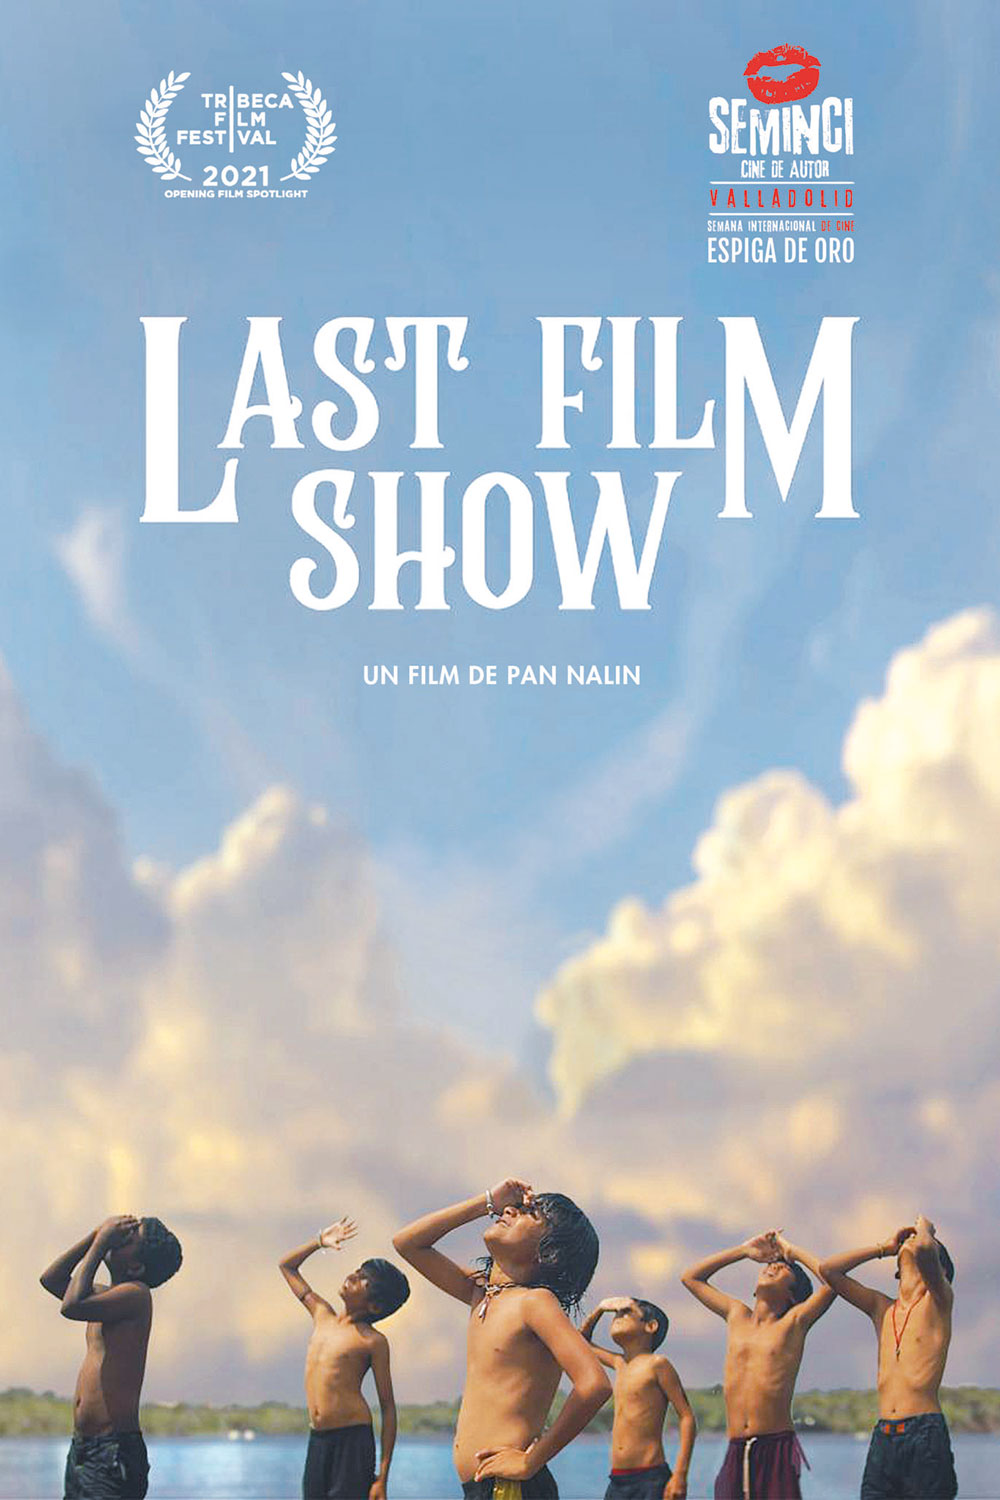 Last film show